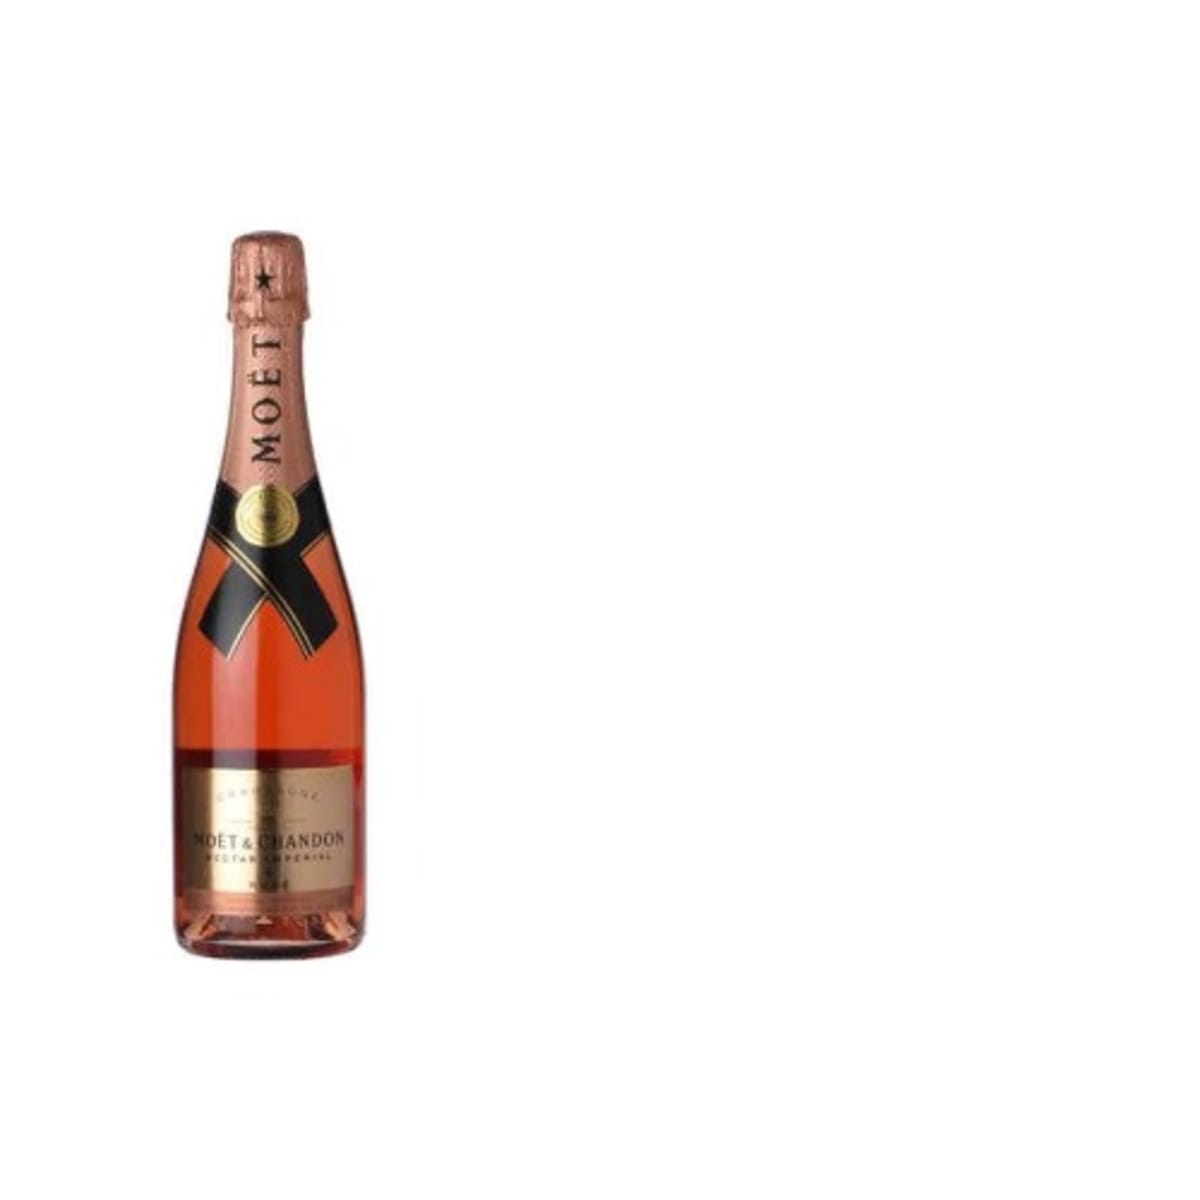 Moet & Chandon Rose Imperial Champagne - Bulk Supermarket